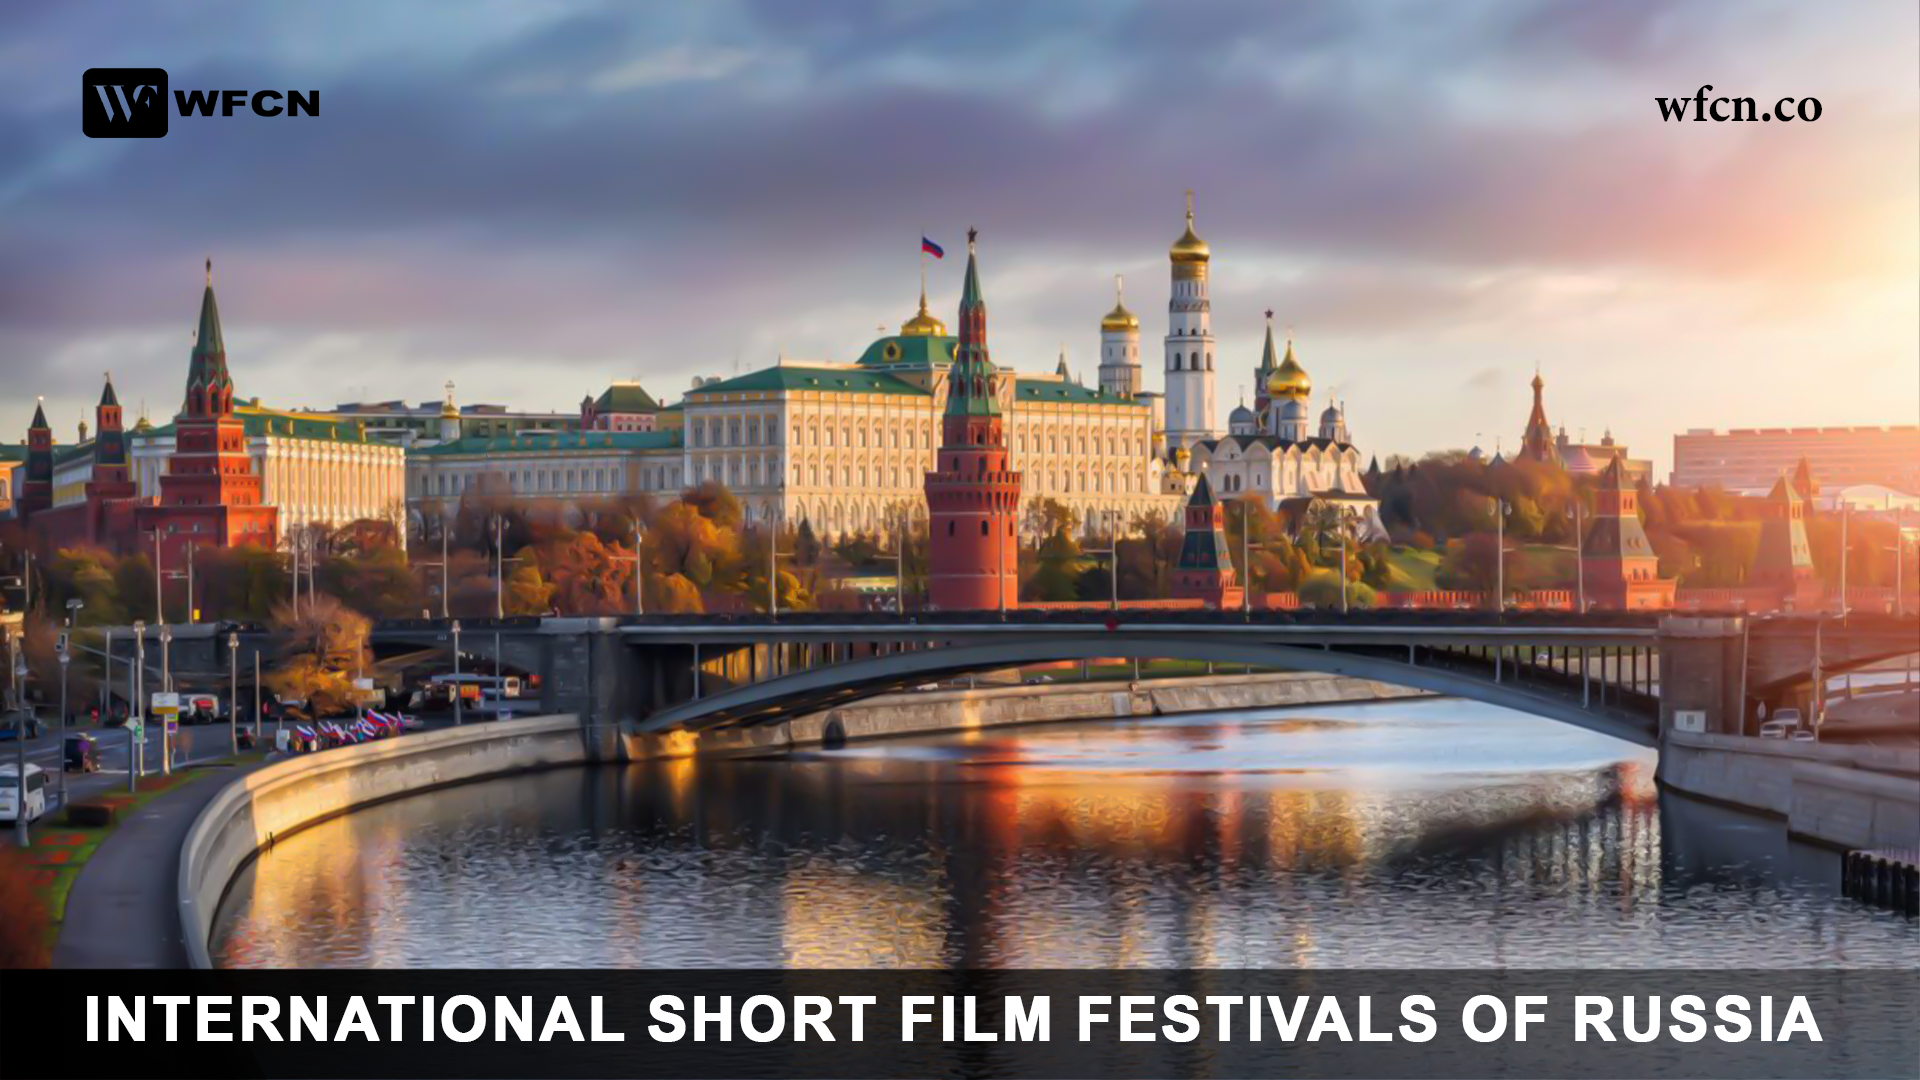 International Short Film Festivals of Russia